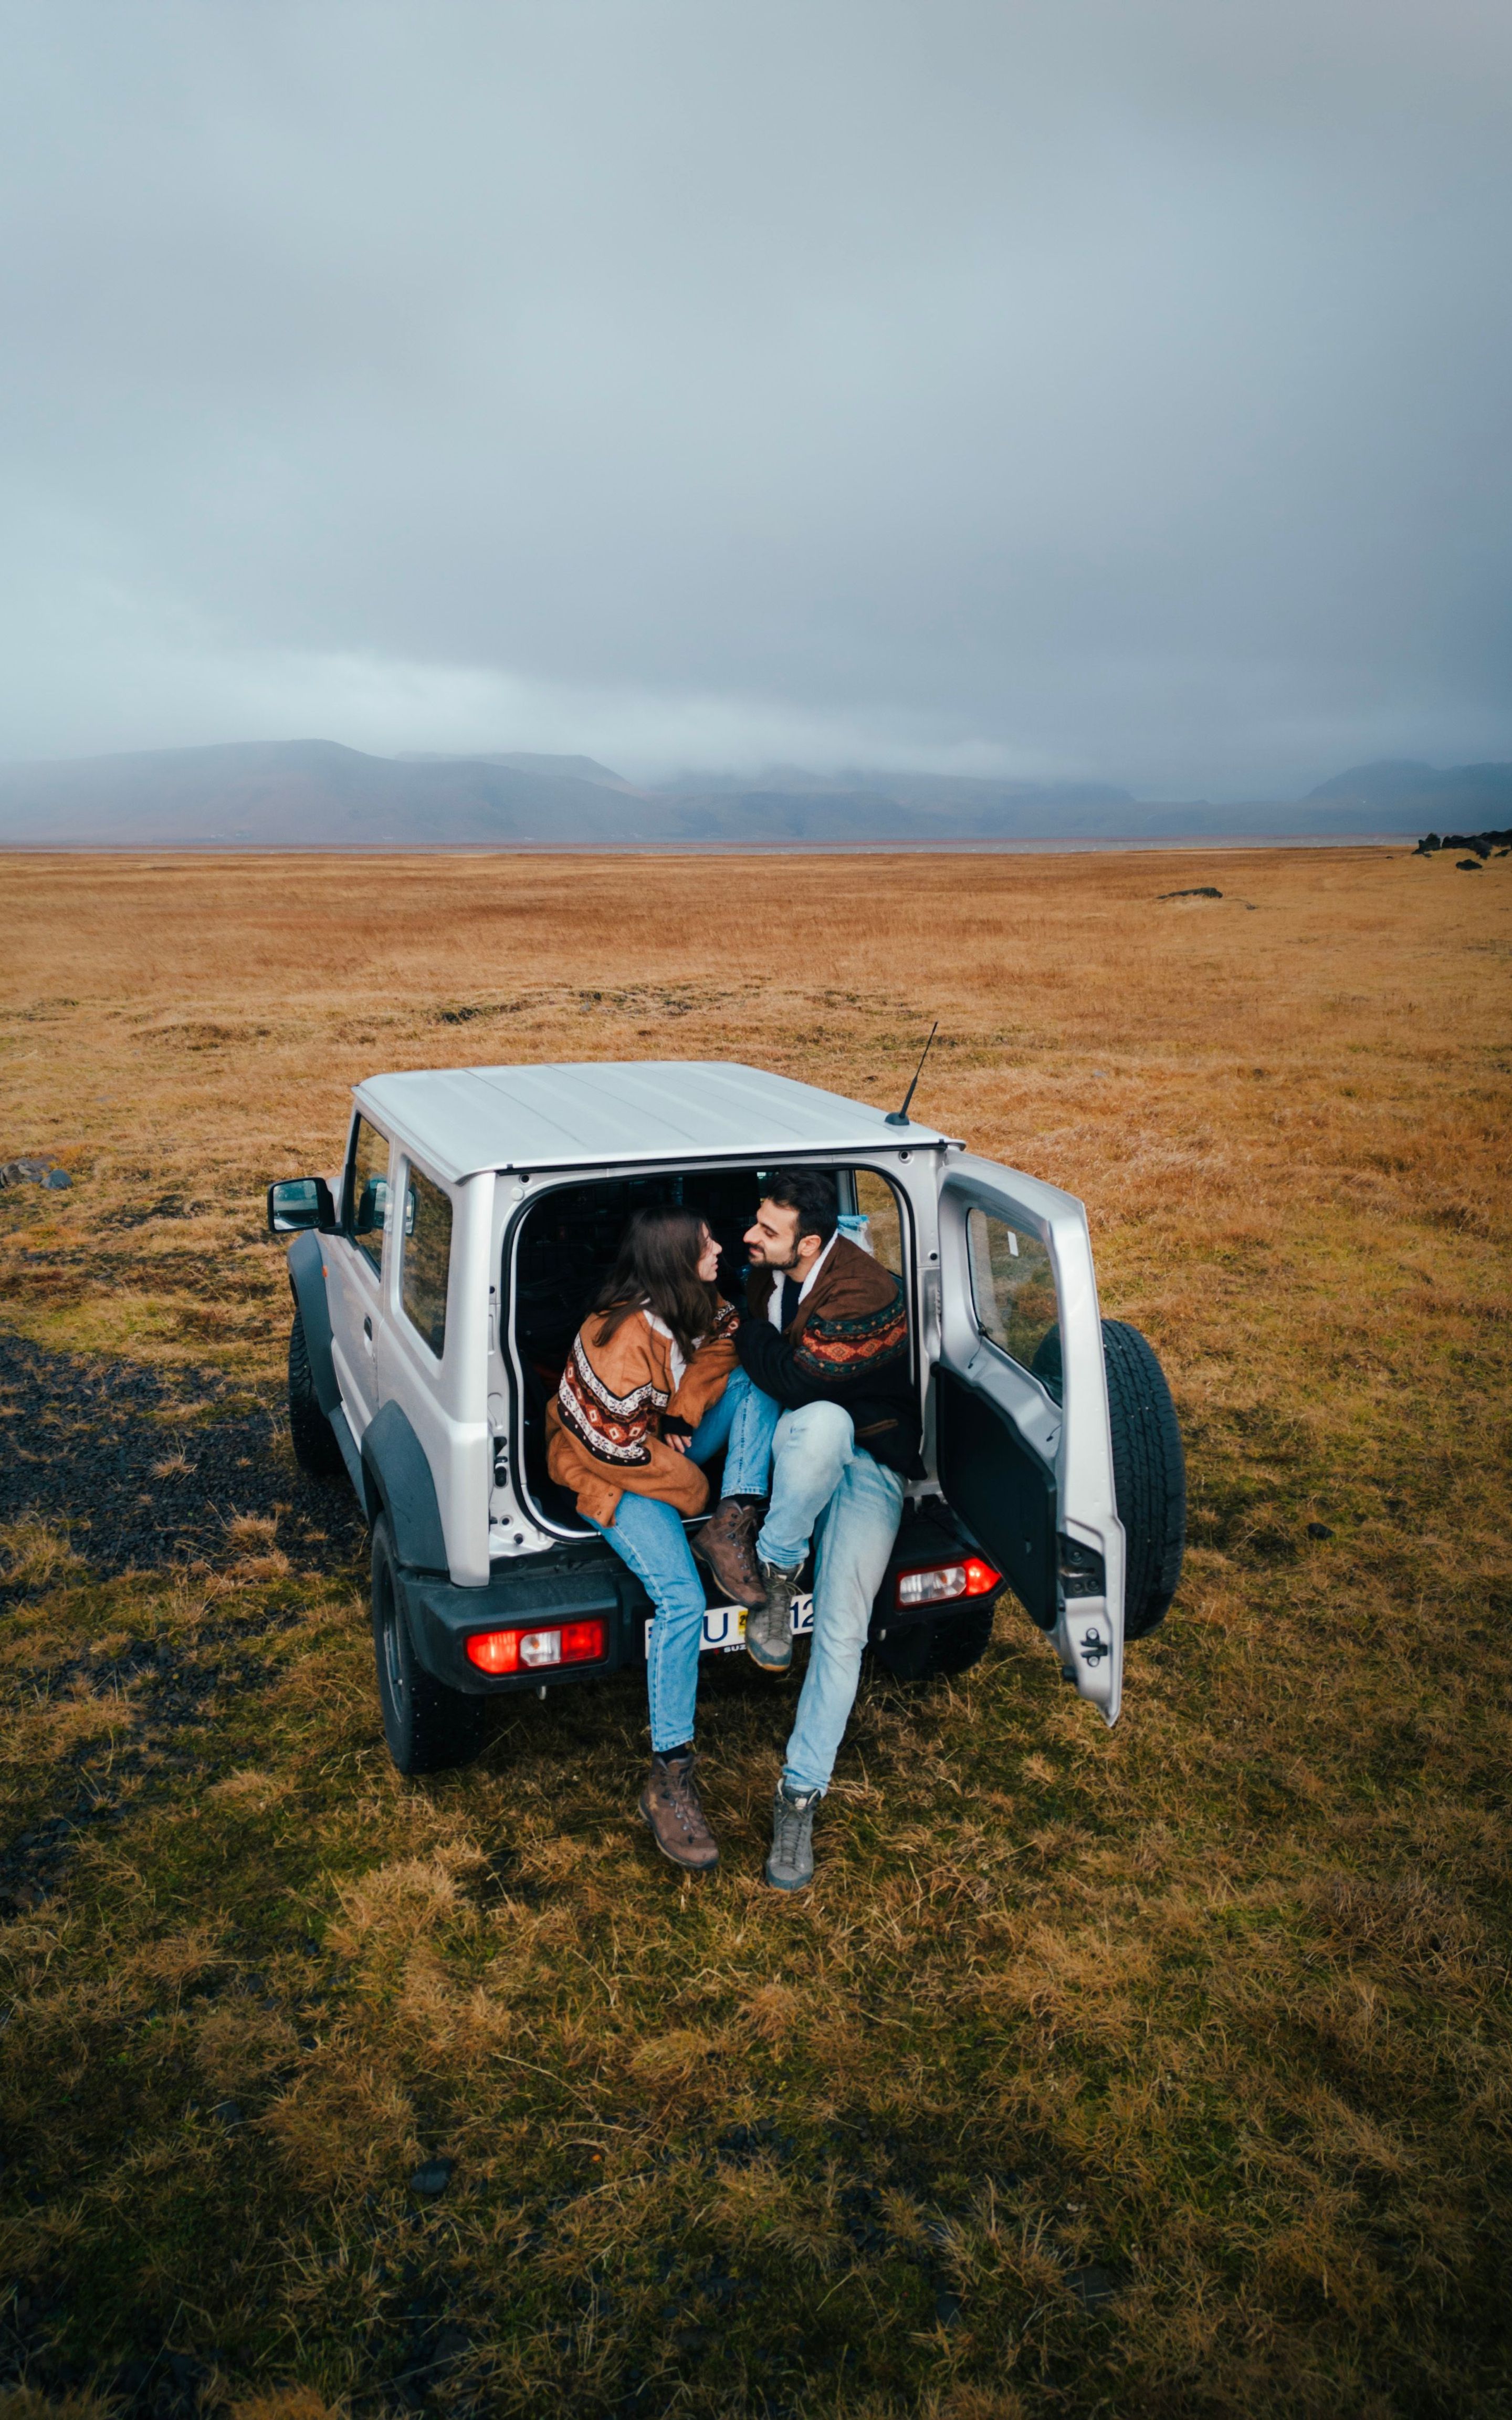 Go Car Rental Islande offre des locations de voitures abordables. Louez une voiture et découvrez l'Islande